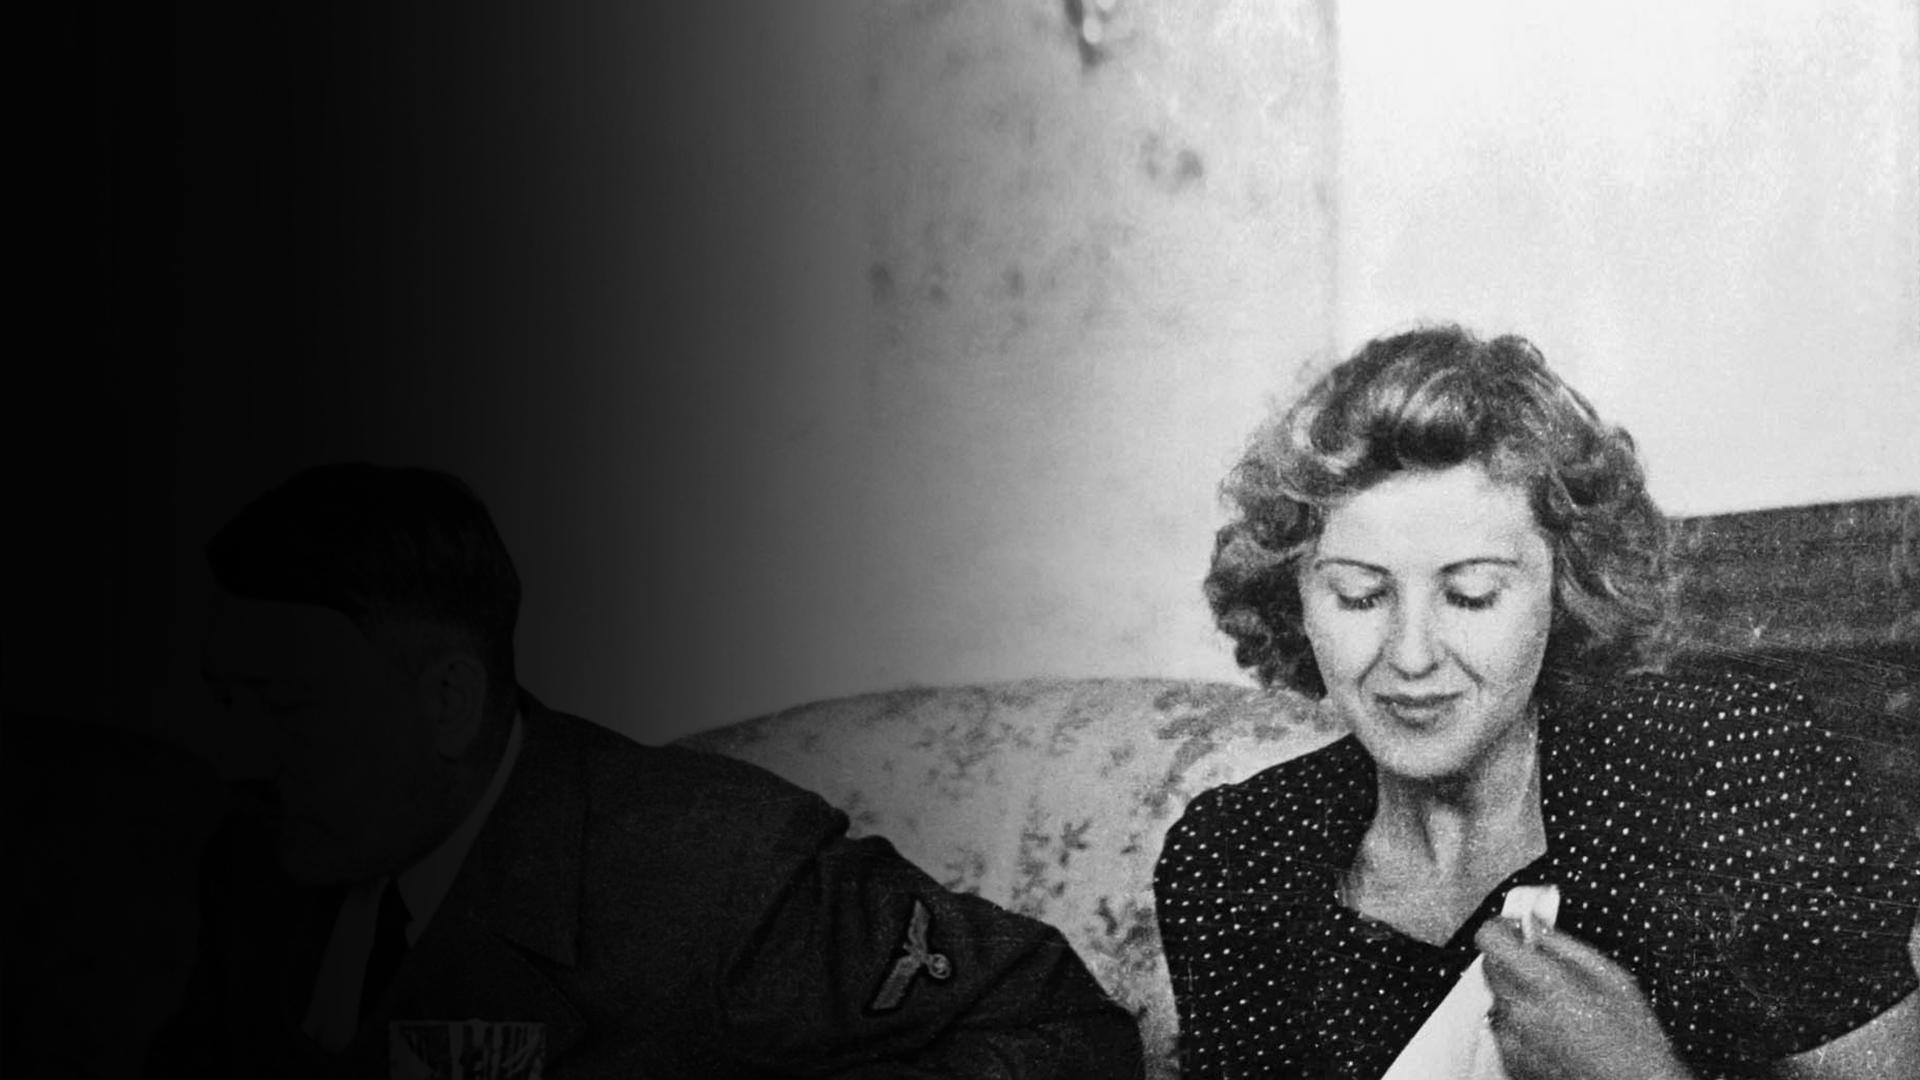 Eva Braun: Hitler's Wife